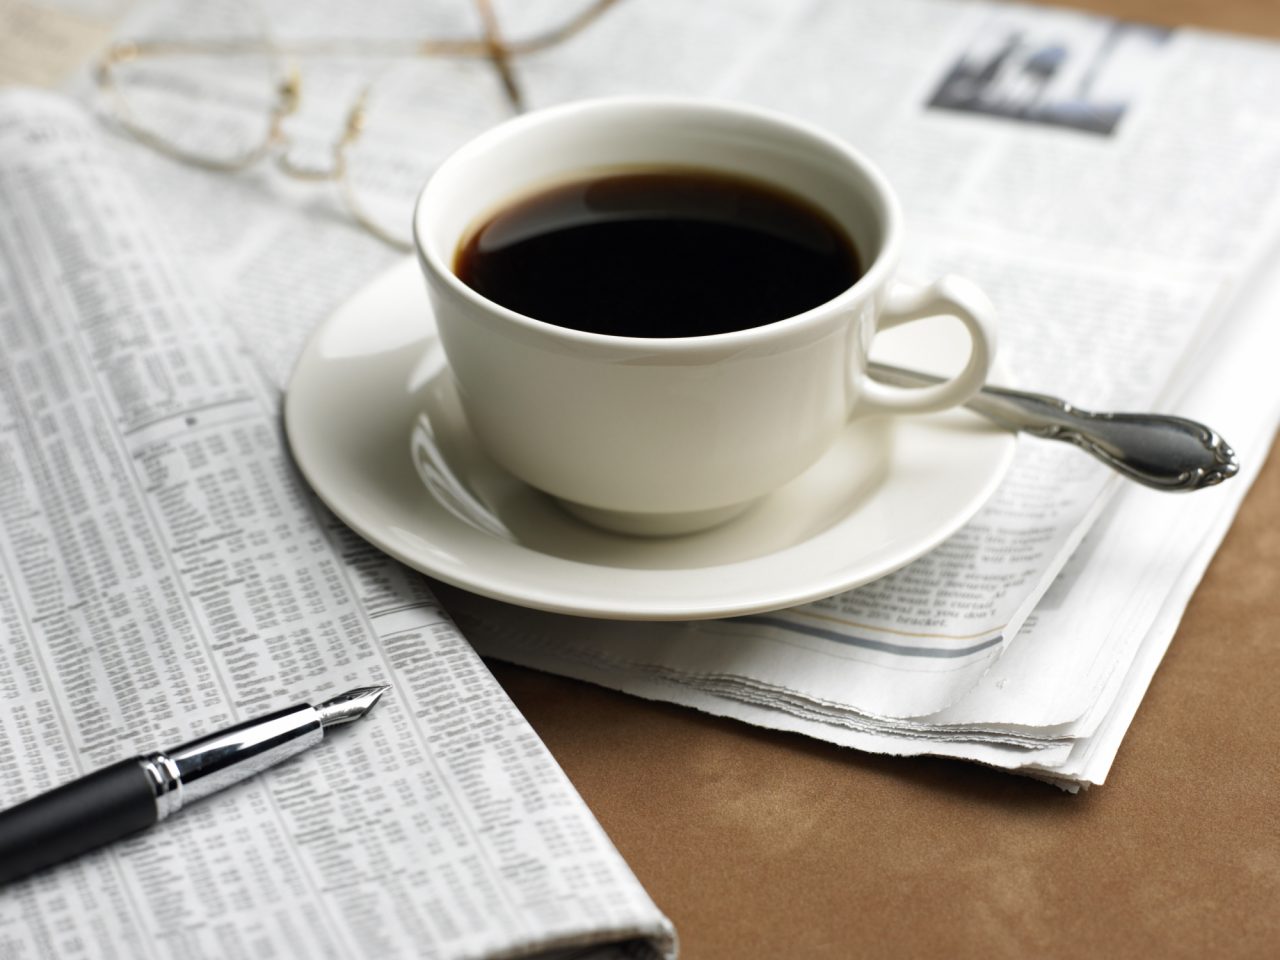 Il caffè contro il diabete salute ricerche caffeina parkinson cancro alzheimer studio cerebrale genetica